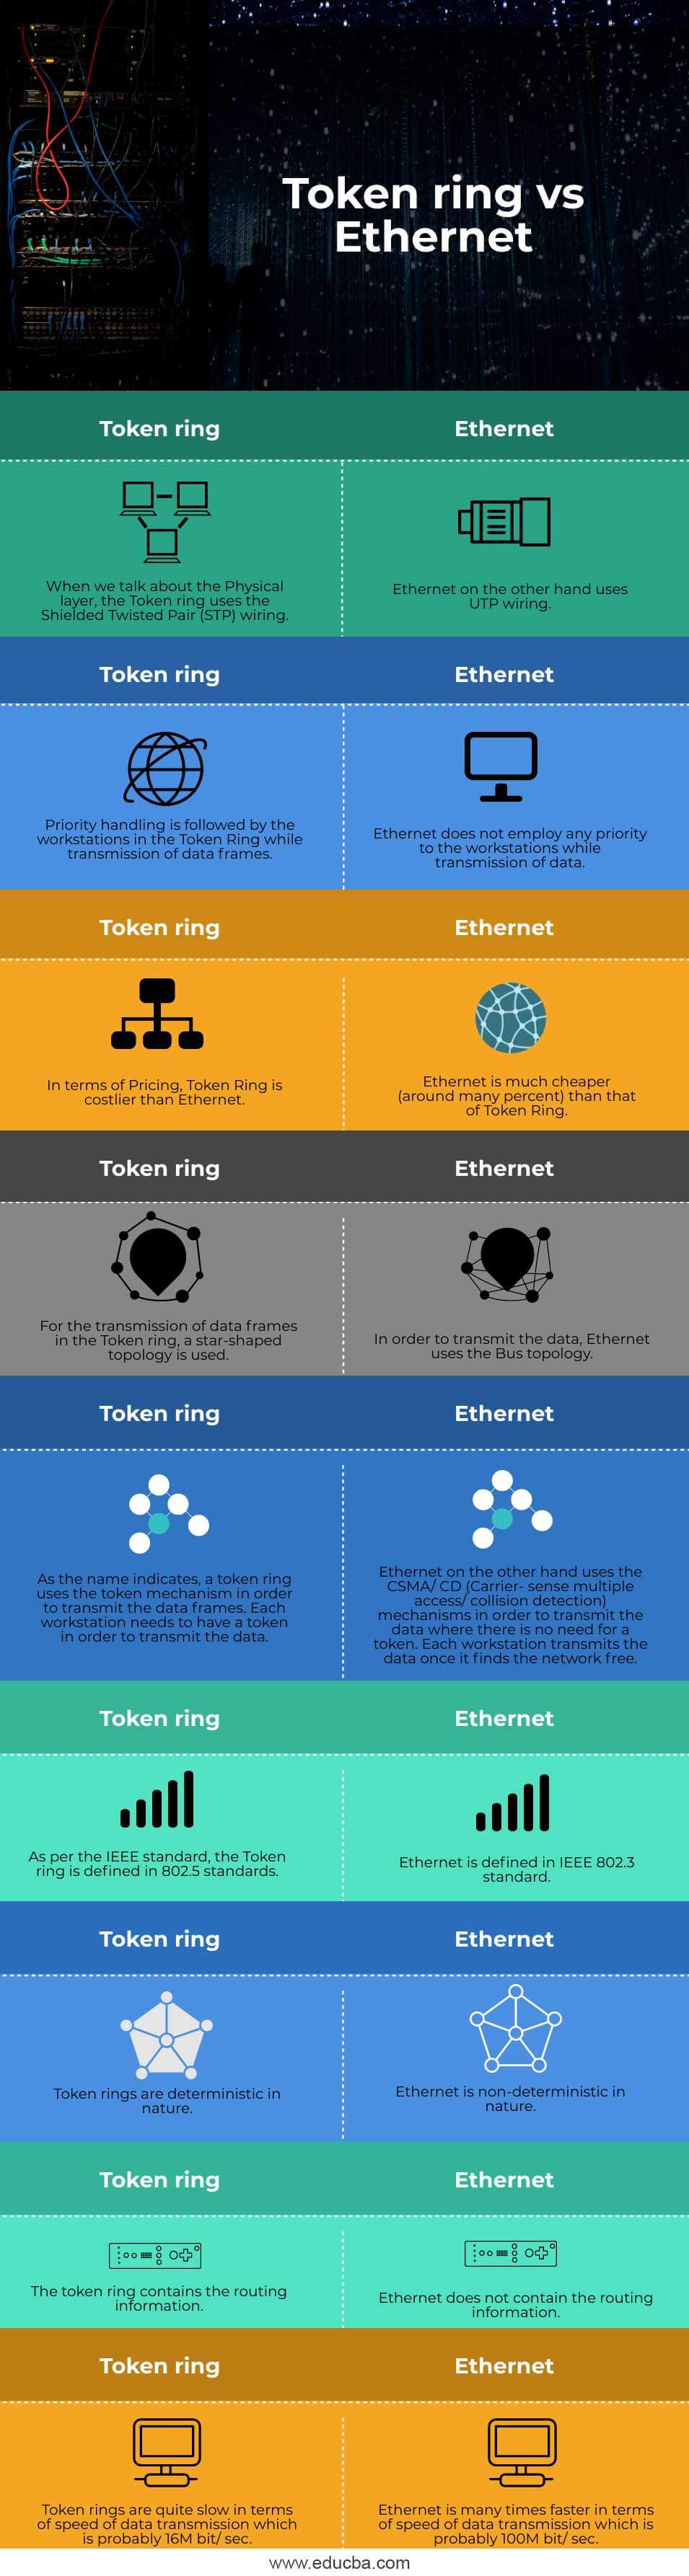 Token-ring-vs-Ethernet-info